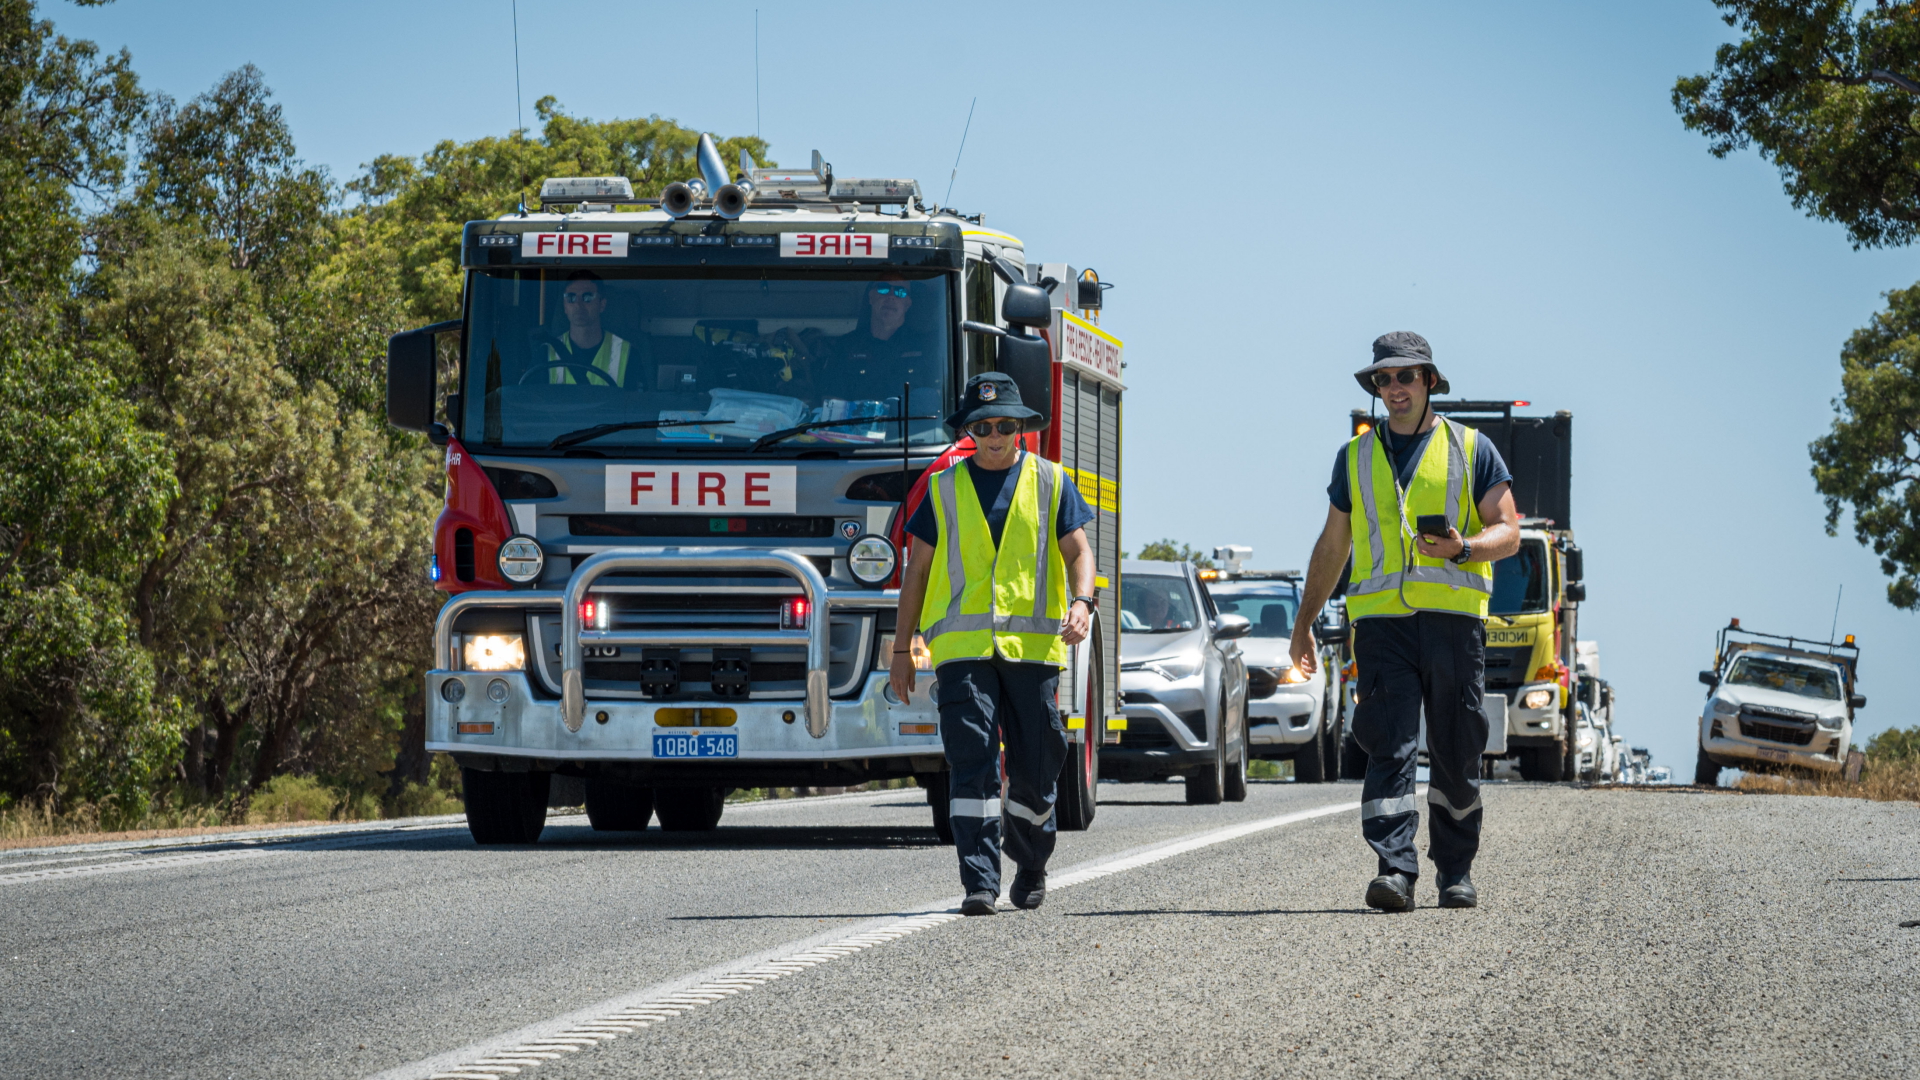 Mitarbeiter des Department of Fire and Emergency Services in Westaustralien, die nach einer winzigen radioaktiven Kapsel suchen. | dpa